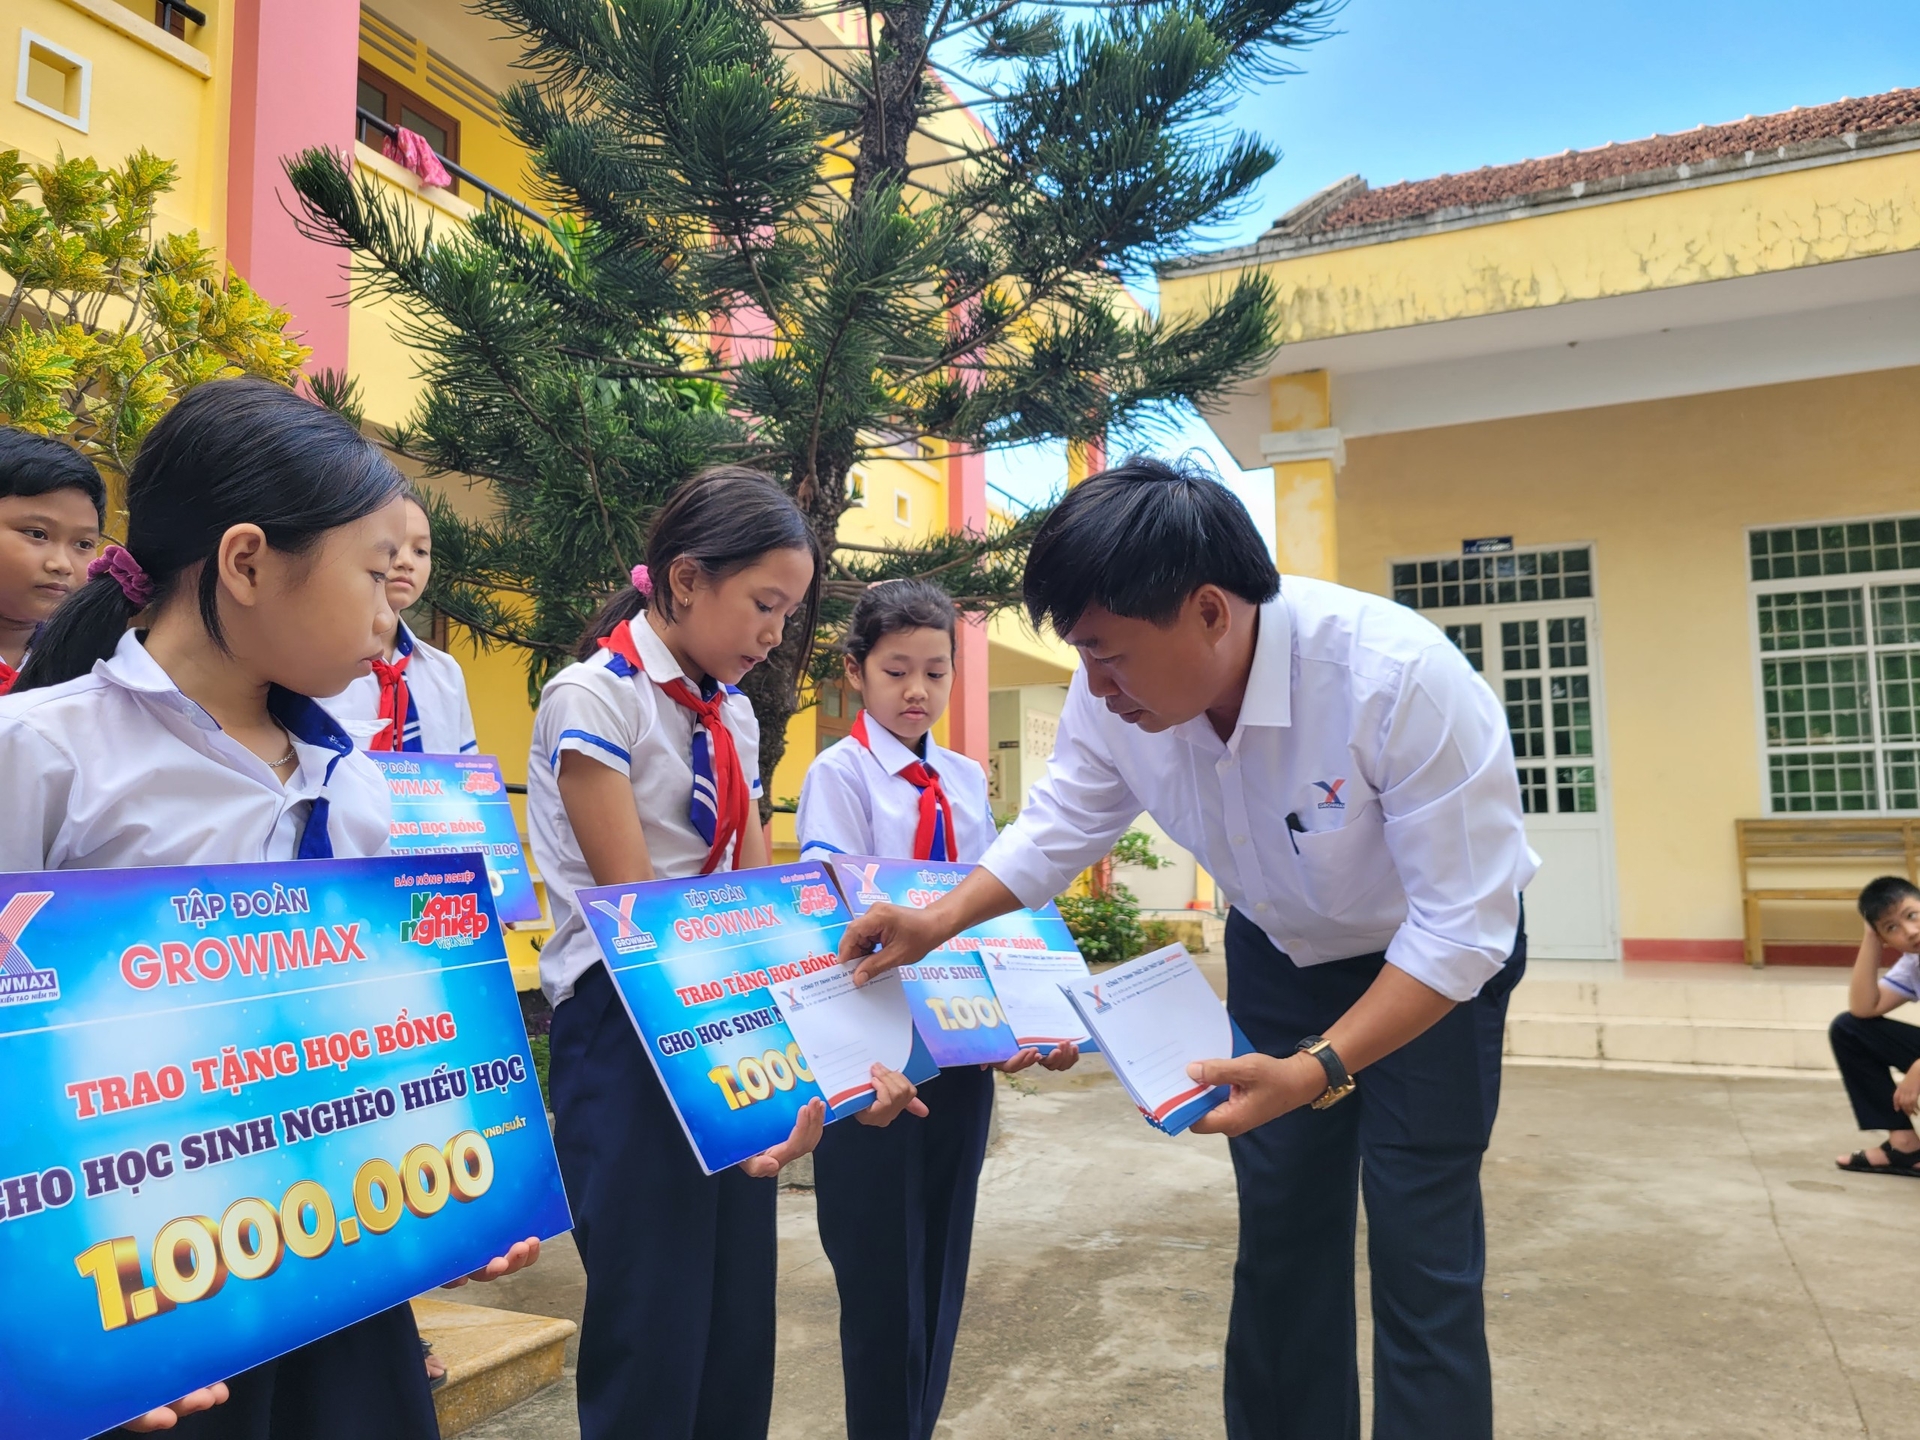 Ông Nguyễn Văn Đại, Giám đốc Khu vực miền Trung 2 (Công ty TNHH Thức ăn Thủy sản GrowMax) trao những suất học bổng cho các em học sinh. Ảnh: PC.